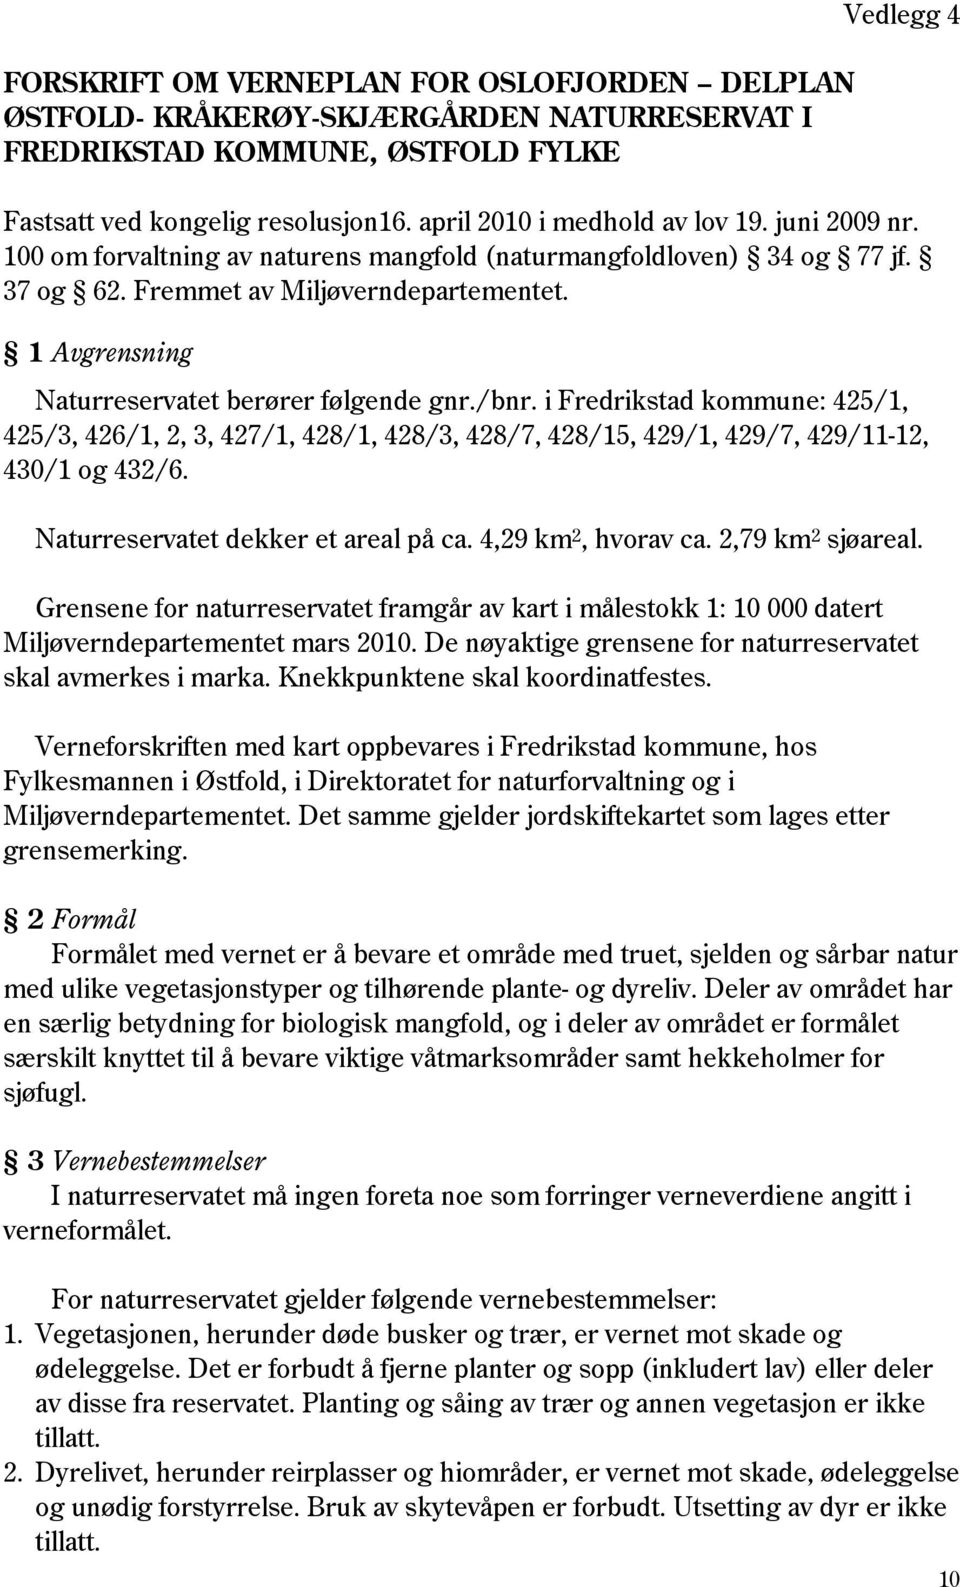 1 Avgrensning Naturreservatet berører følgende gnr./bnr. i Fredrikstad kommune: 425/1, 425/3, 426/1, 2, 3, 427/1, 428/1, 428/3, 428/7, 428/15, 429/1, 429/7, 429/11-12, 430/1 og 432/6.